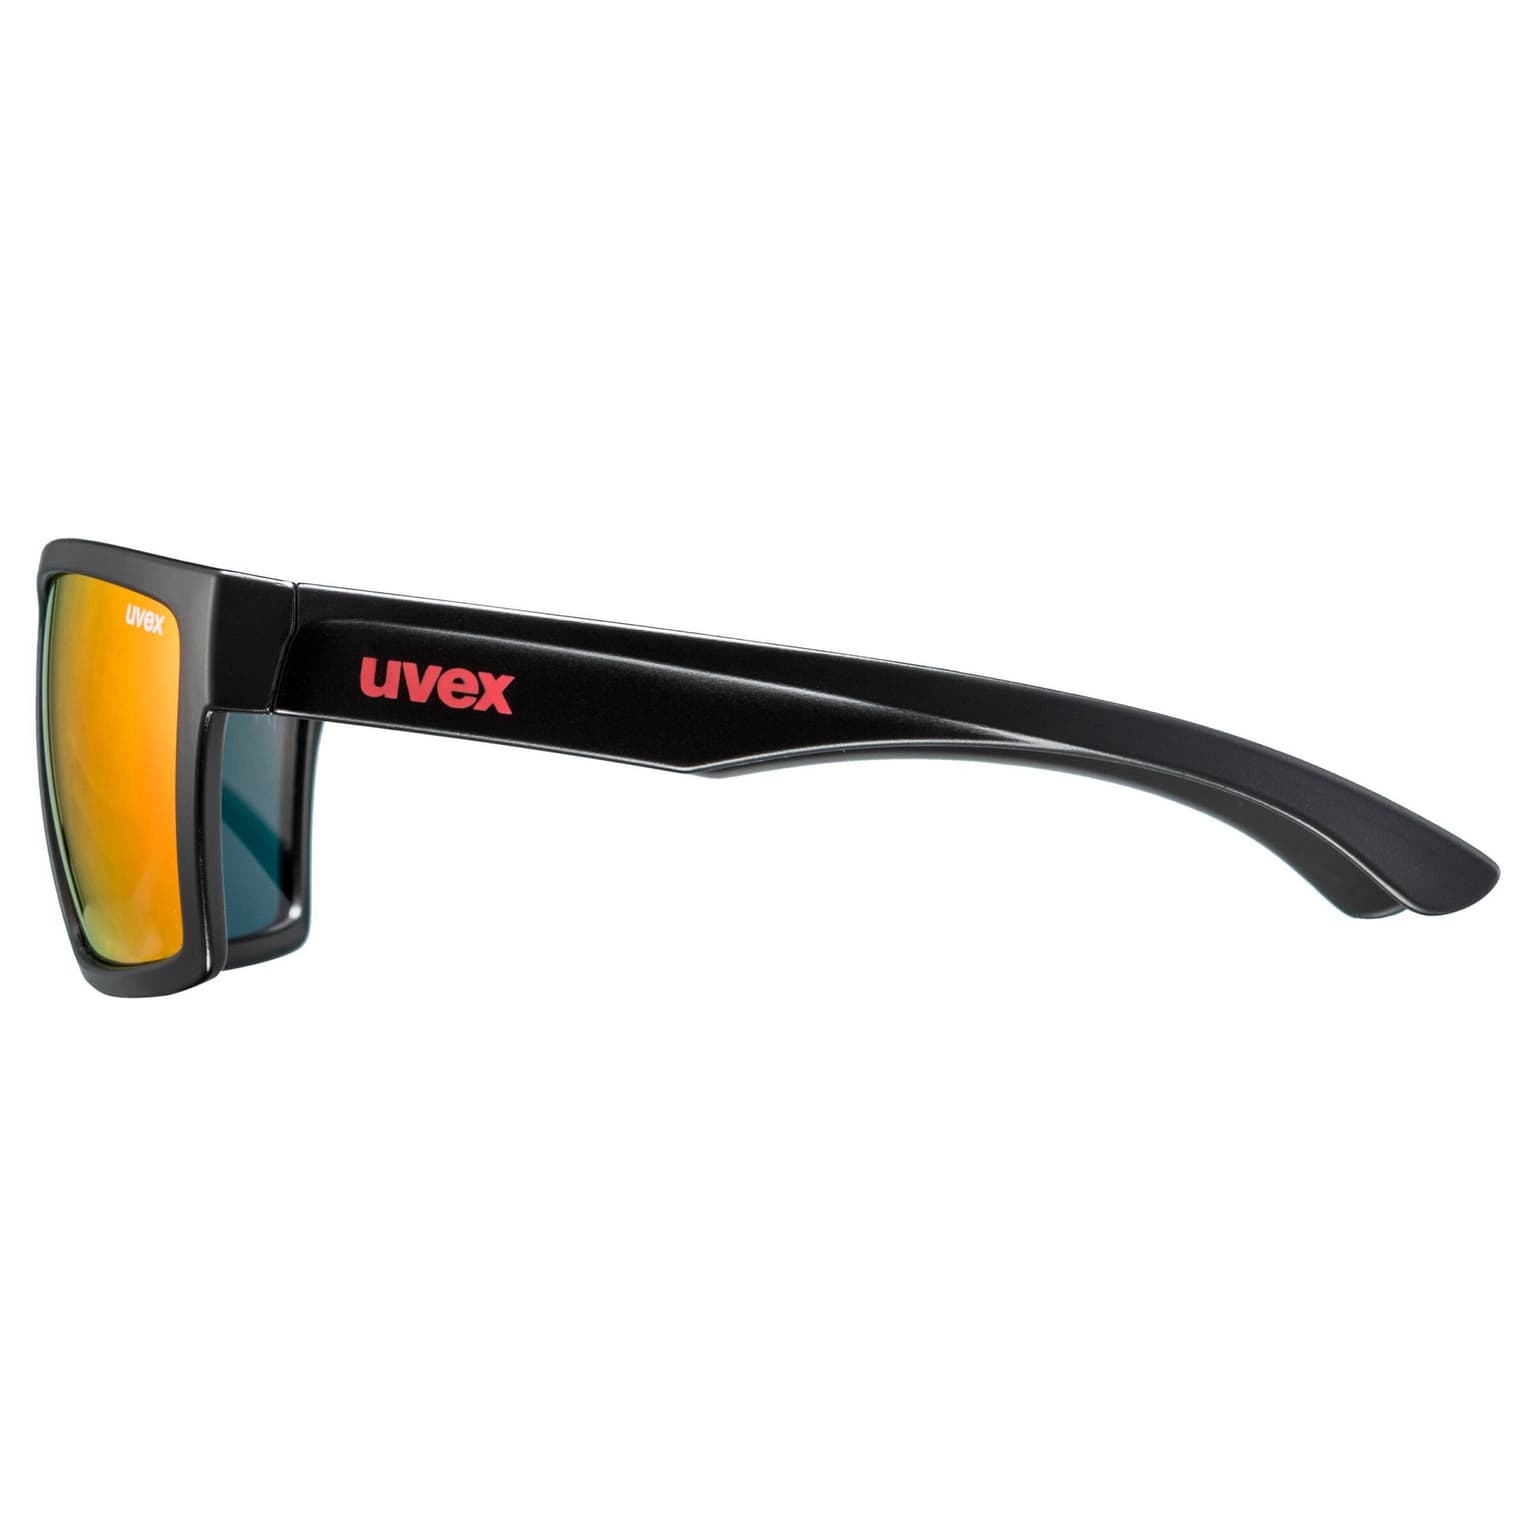 Uvex Uvex lgl 29 Sportbrille schwarz 9